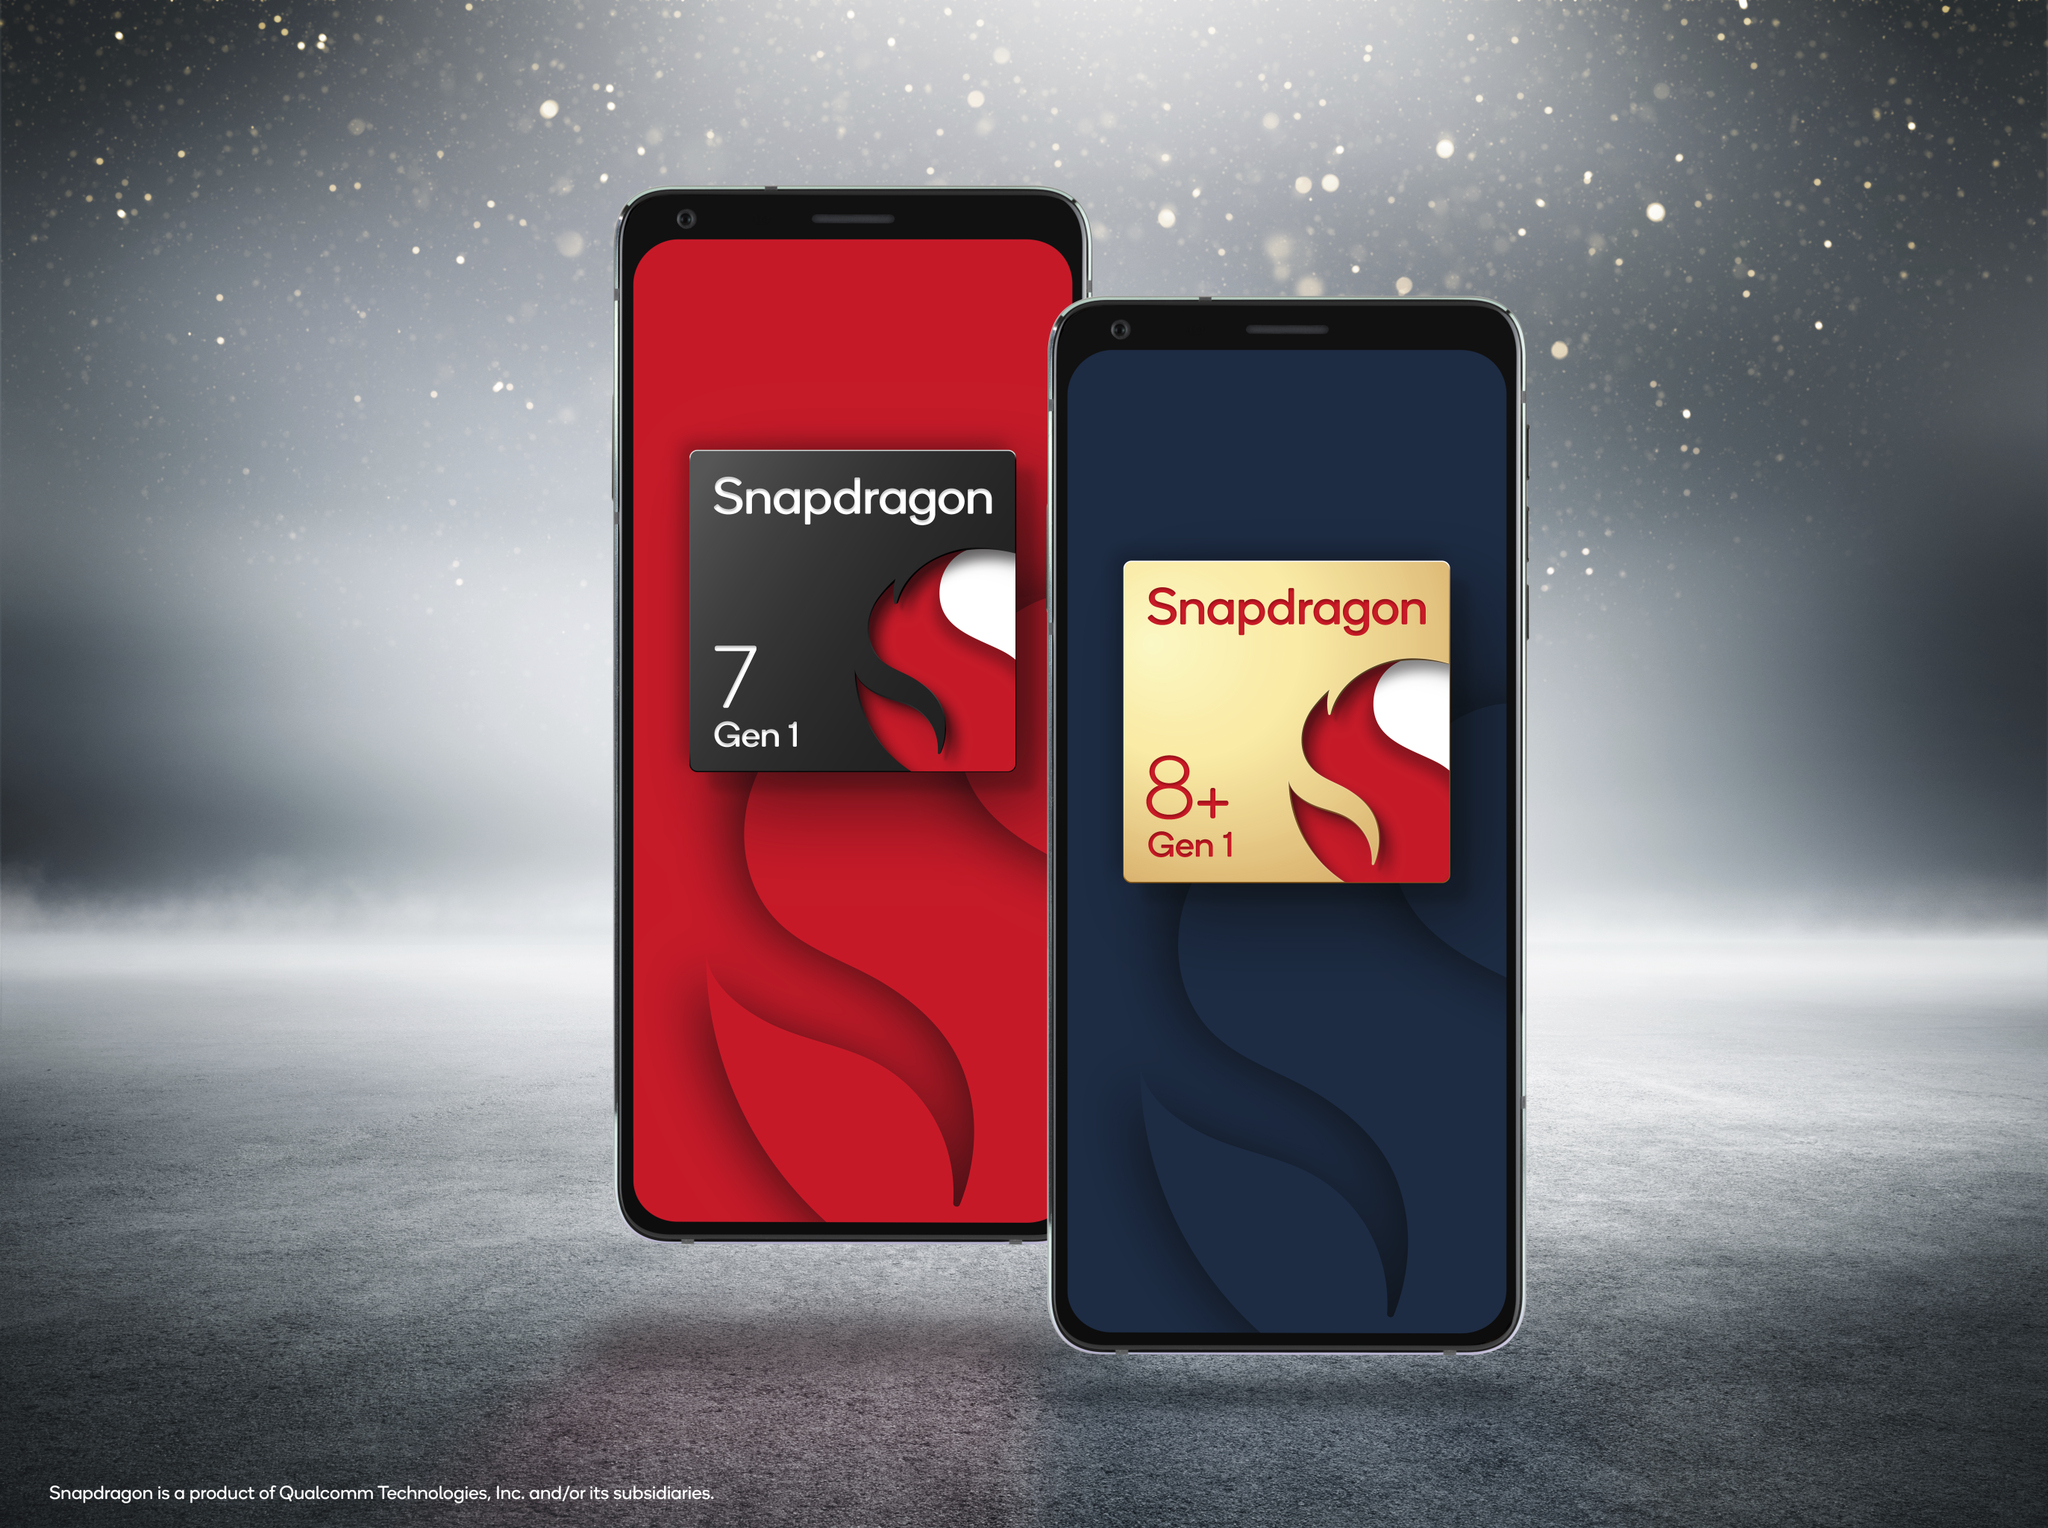 Qualcomm dévoile enfin les Snapdragon 8+ Gen 1 et Snapdragon 7 Gen 1 : un nouveau tournant pour les smartphones Android ?